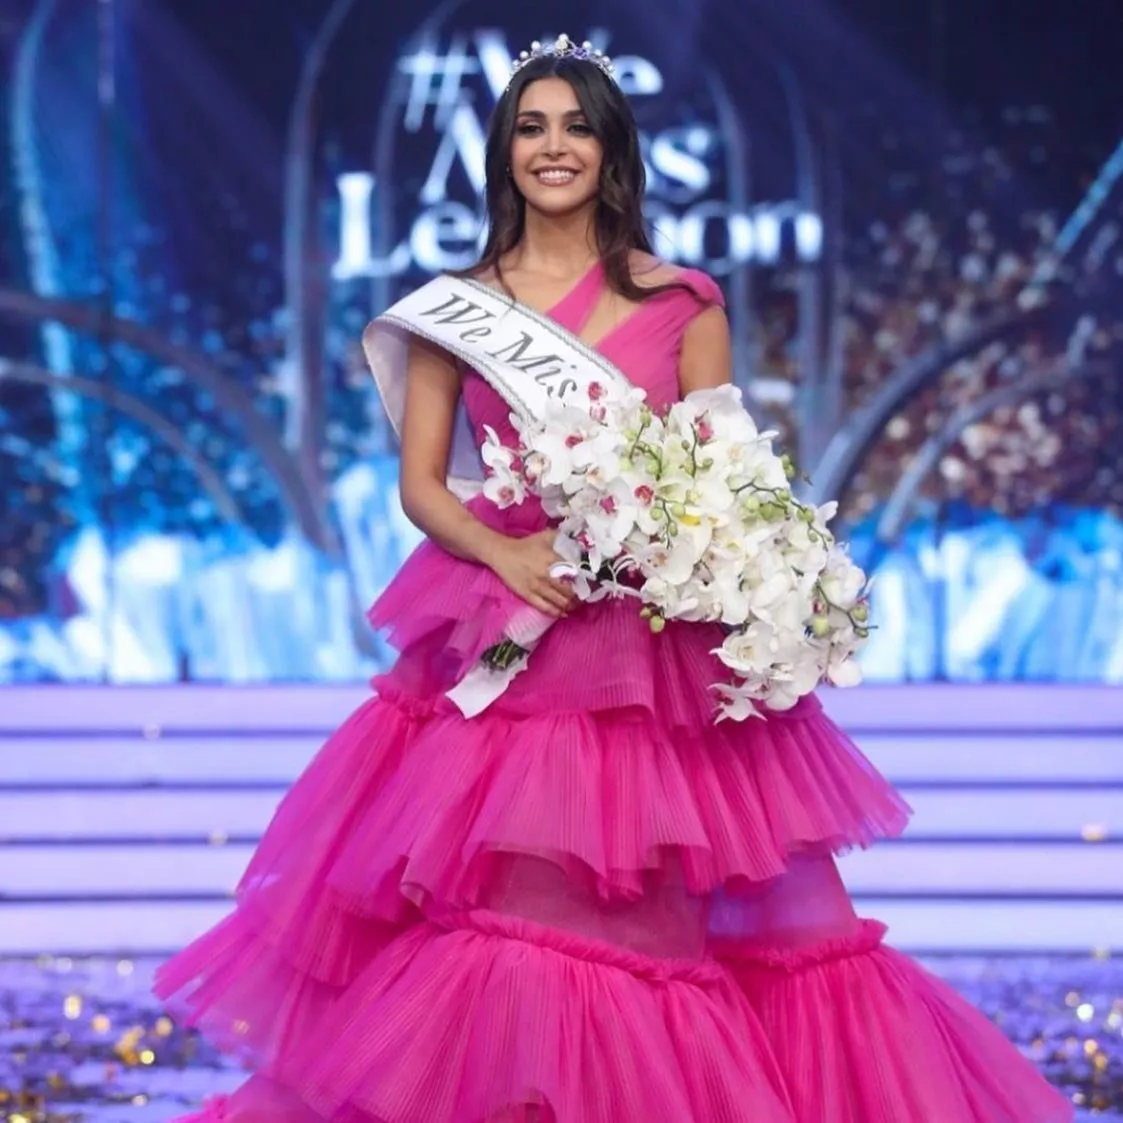 ياسمينا زيتون تفوز بلقب ملكة جمال لبنان لعام 2022